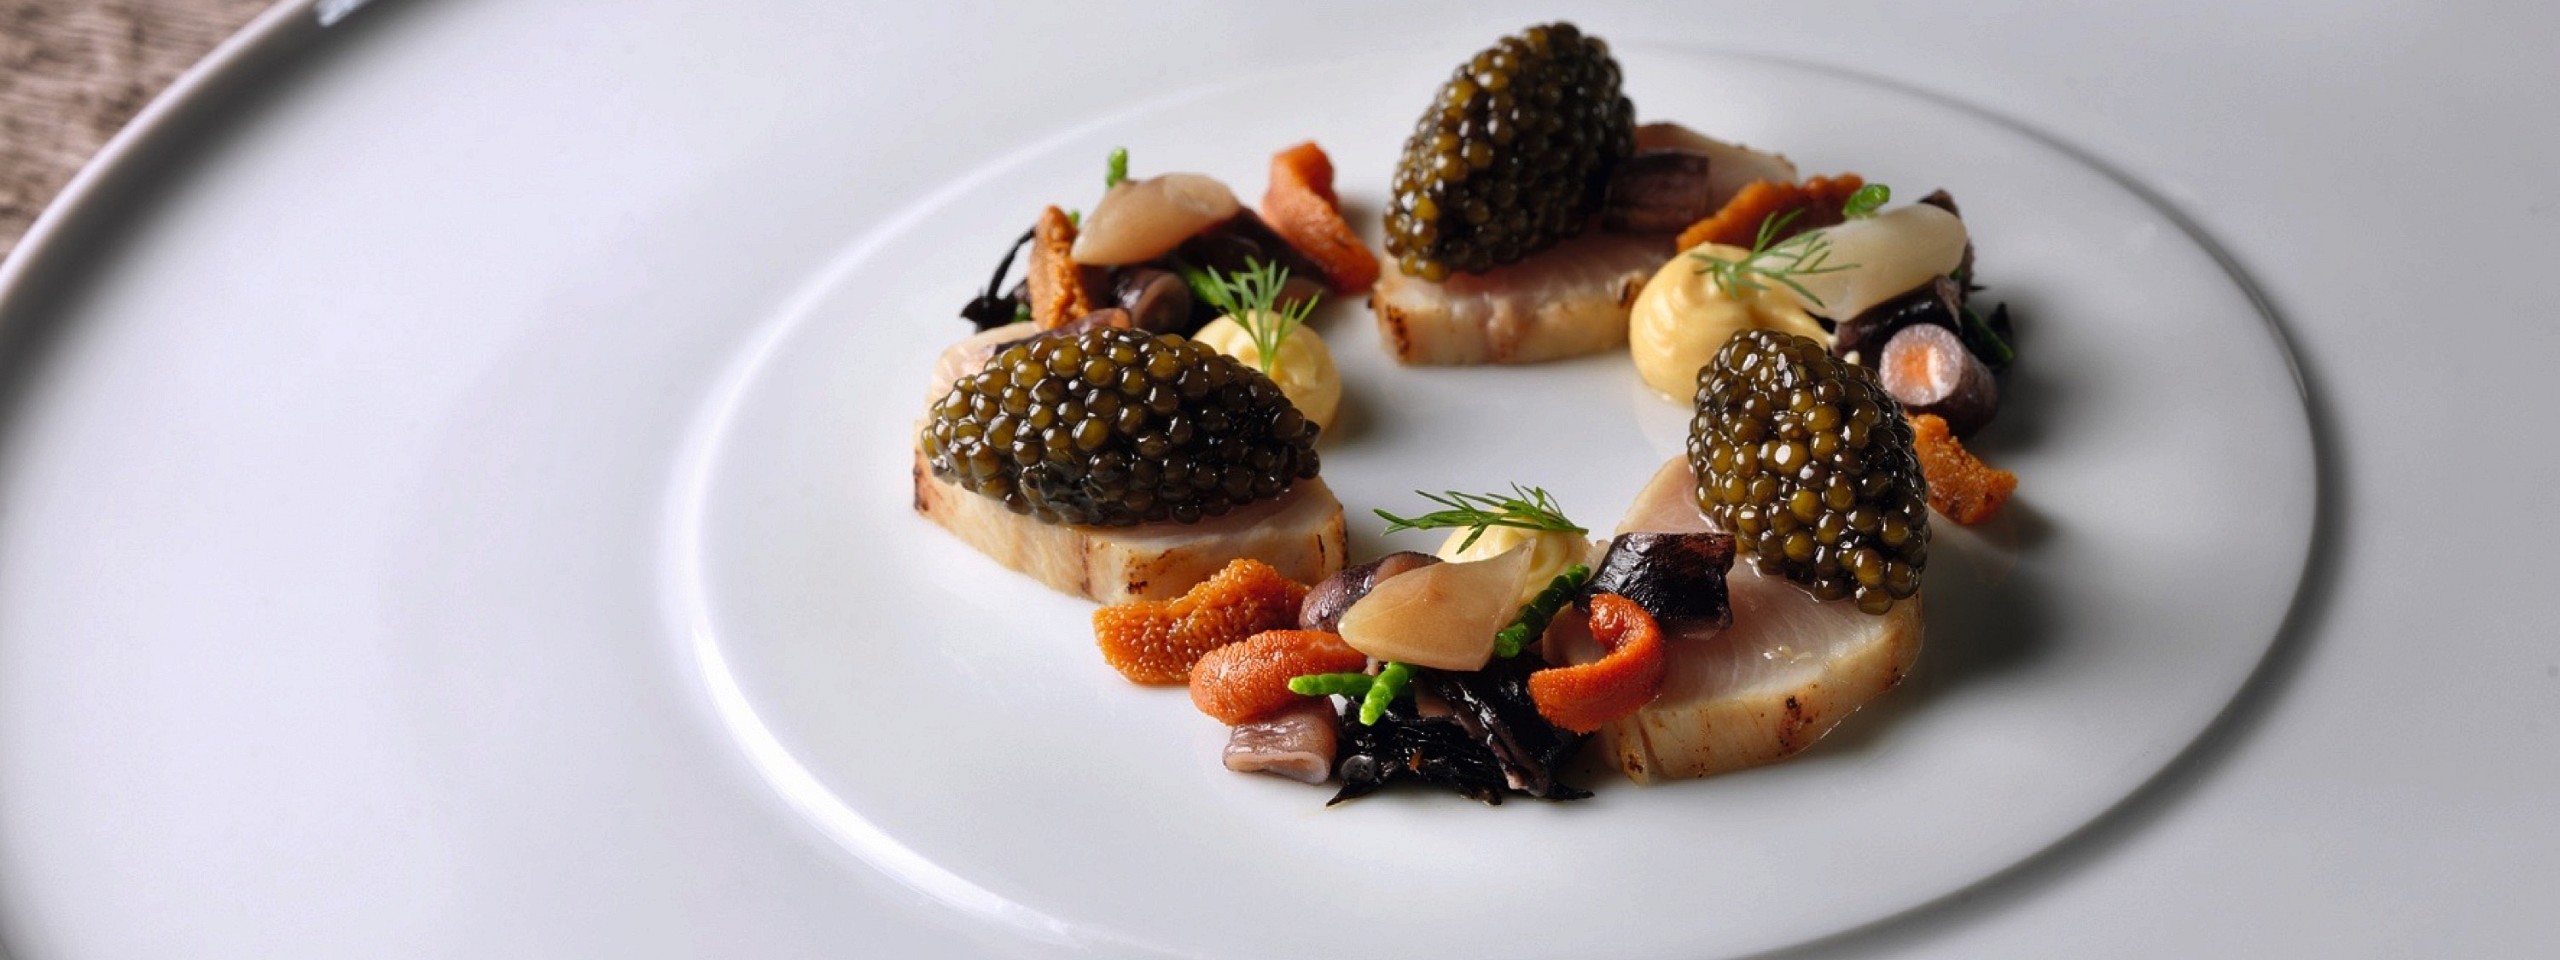 Gebeizte Stachelmakrele mit Kaviar garniert im Restaurant des Hotels im Schwarzwald.